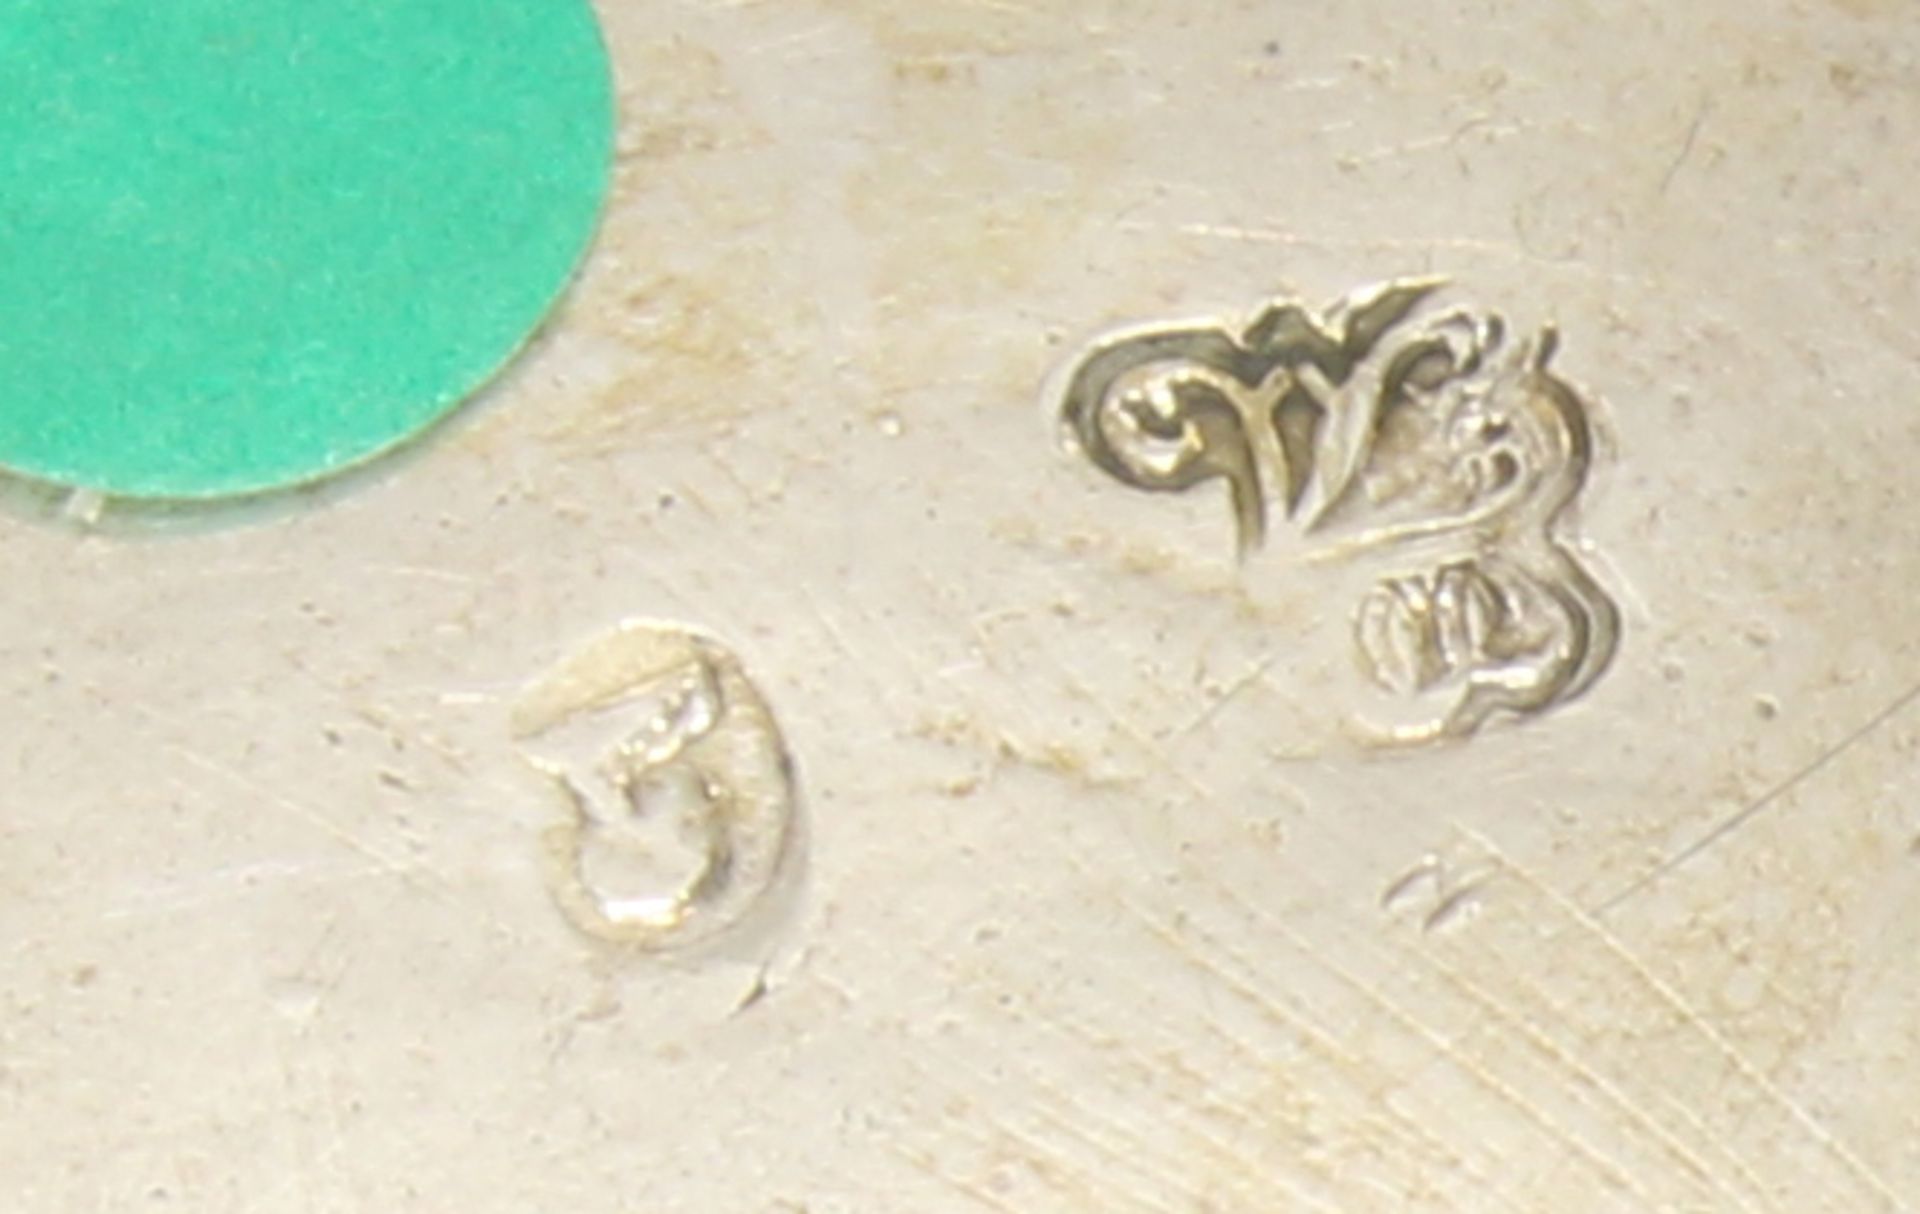 Amorettenkorb, Silber, Marken, à jour gearbeitet, auf Standfuß, 11 x 20 x 16.5 cm, ca. 335 g, gesta - Image 2 of 2